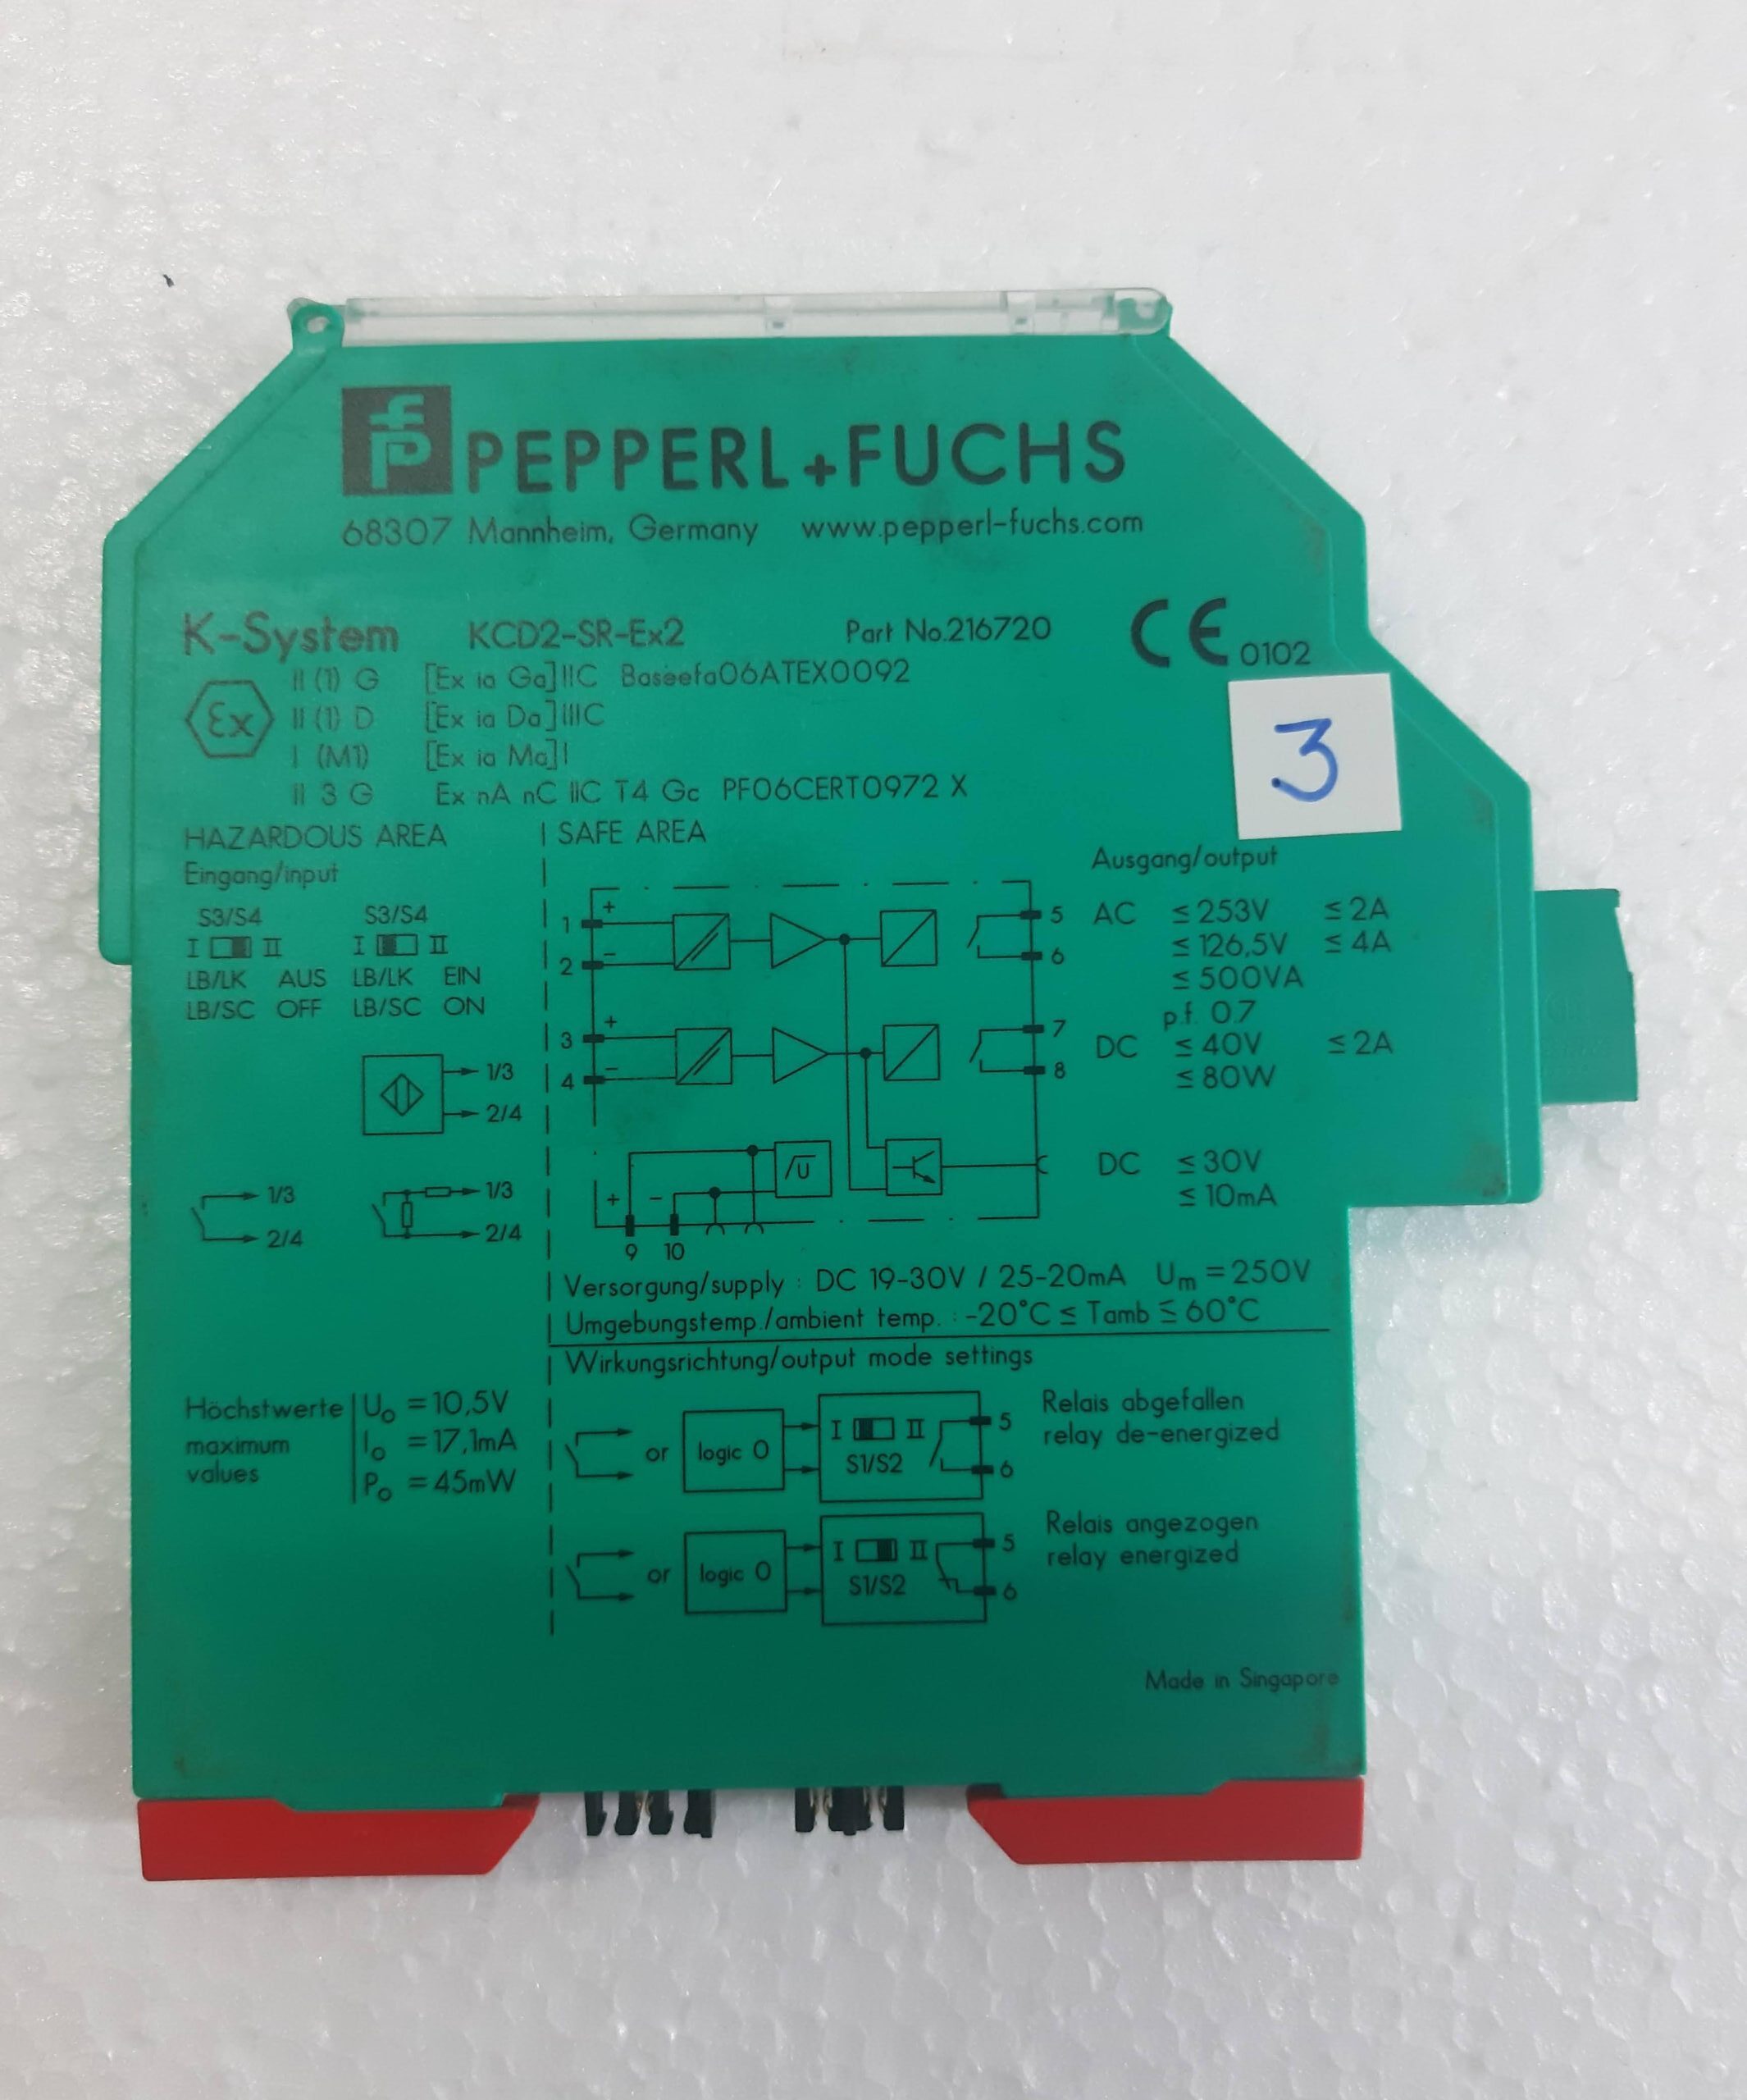 PEPPERL+FUCHS KCD2-SR-EX2